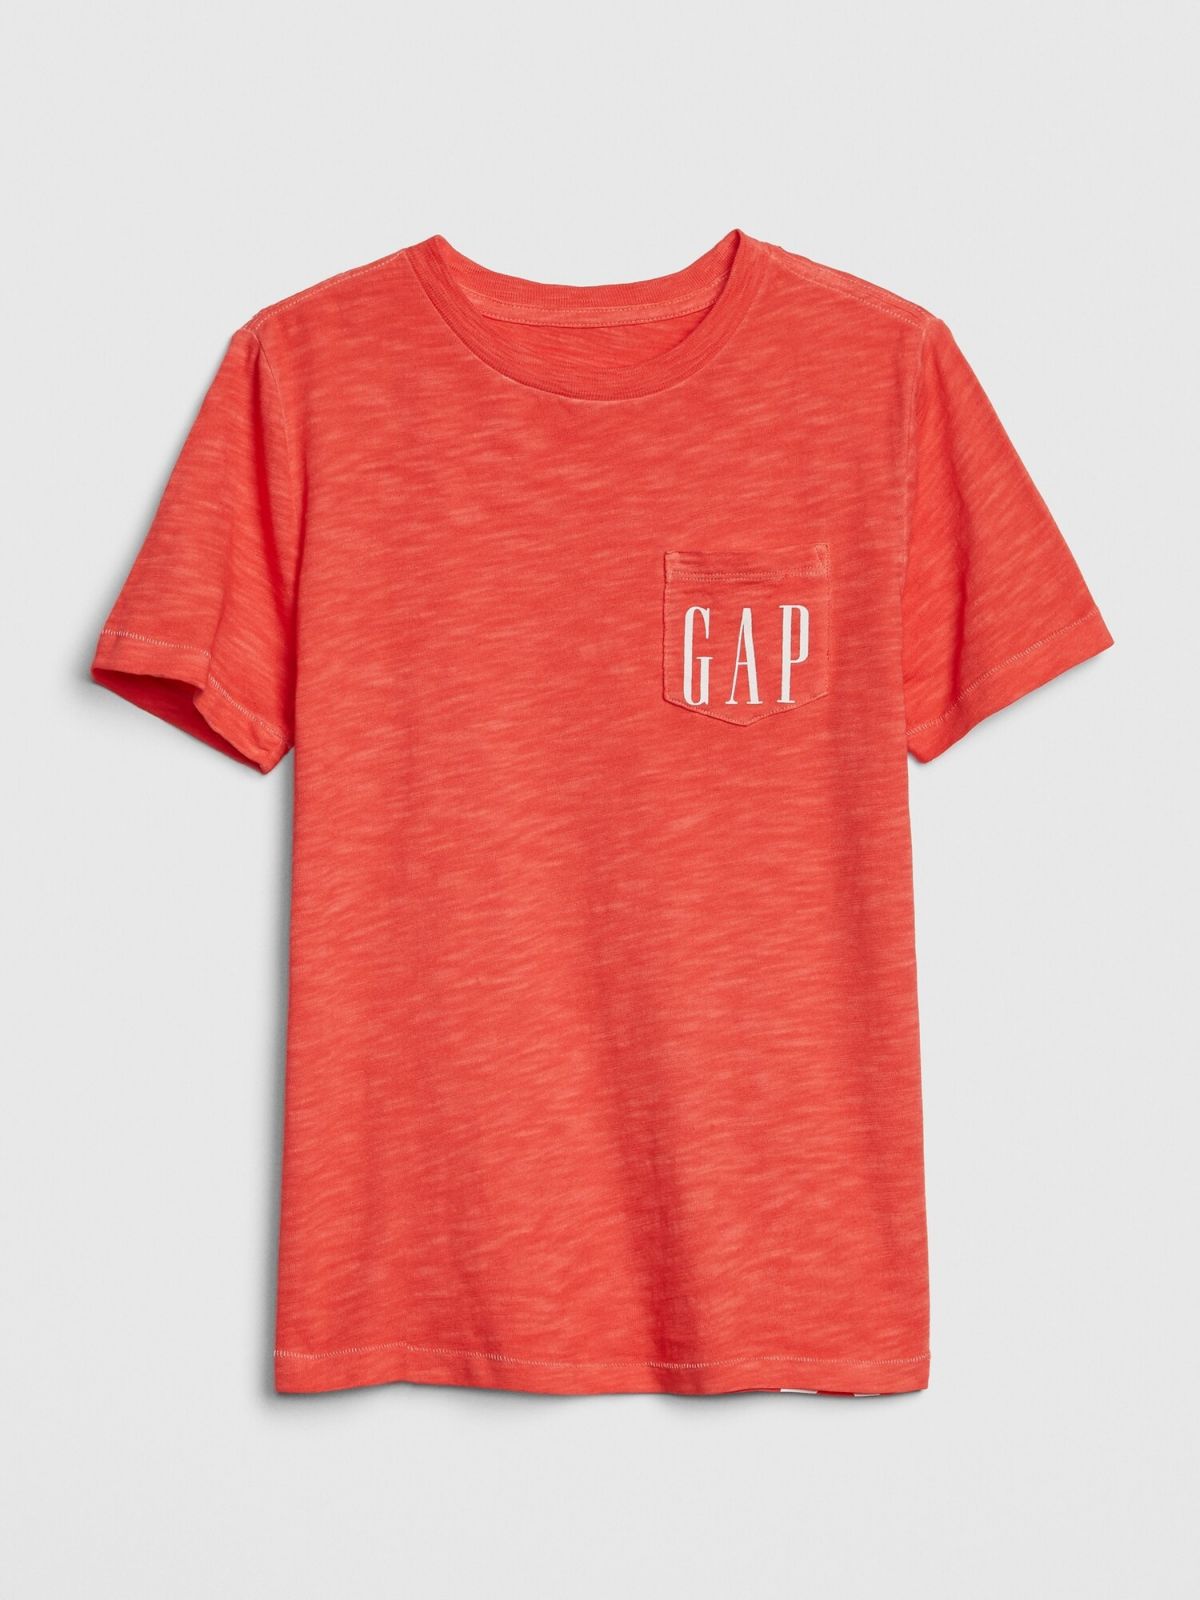  טי שירט עם הדפס לוגו Gap 50th anniversary / בנים של GAP